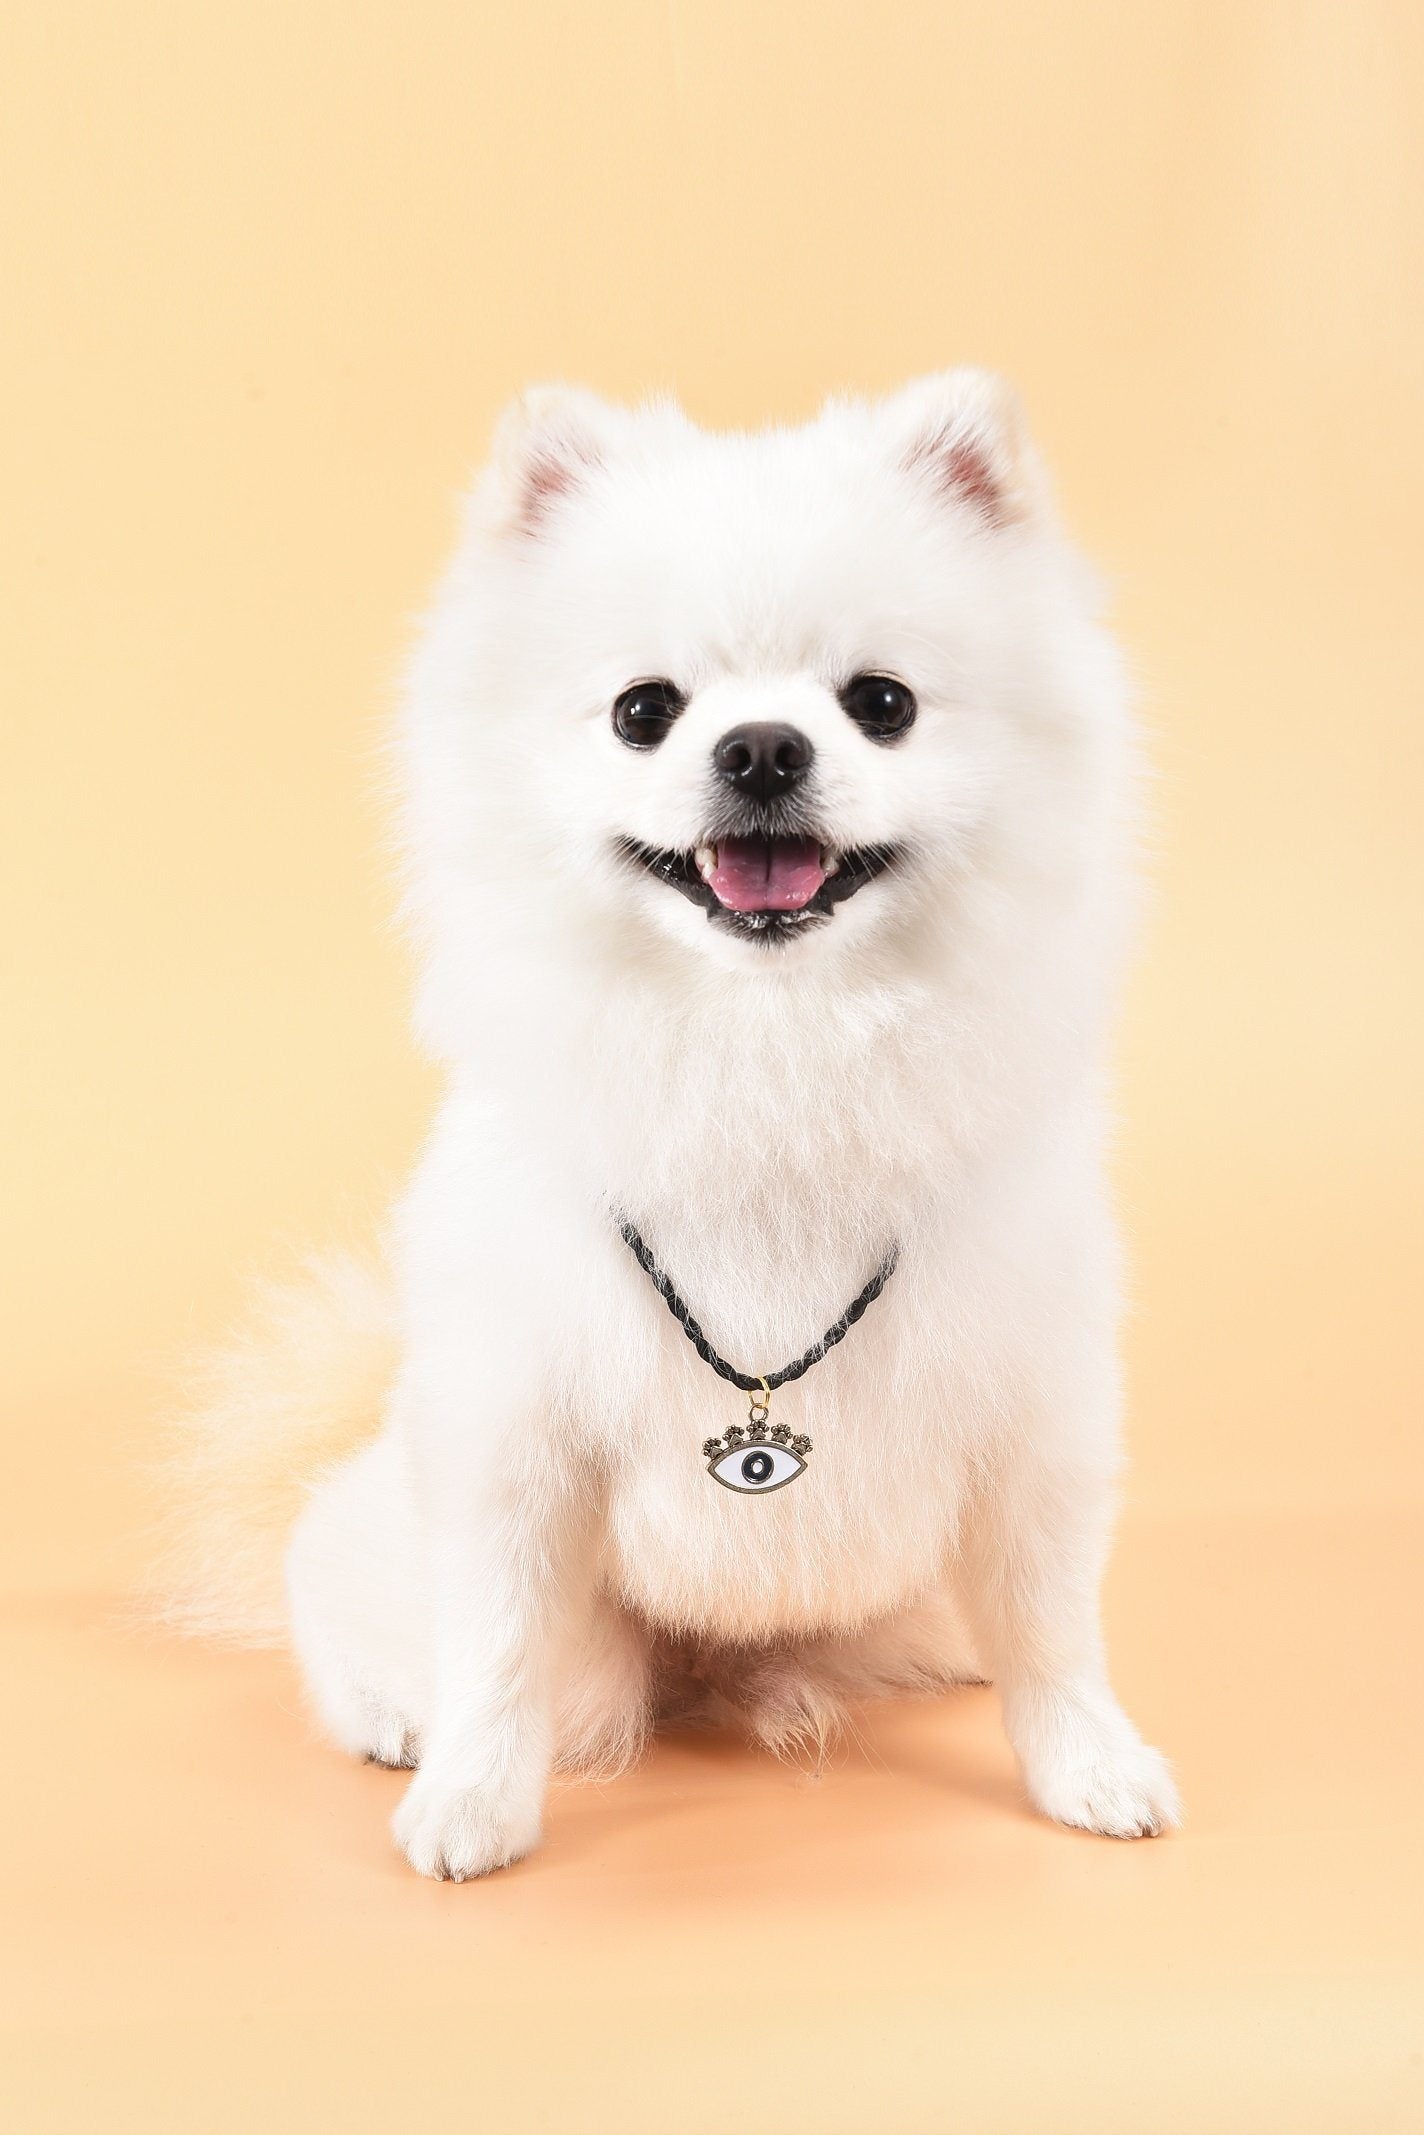 Hingebungsvoller Schutz - Bronze-Emaille Böses Auge Hundemarke